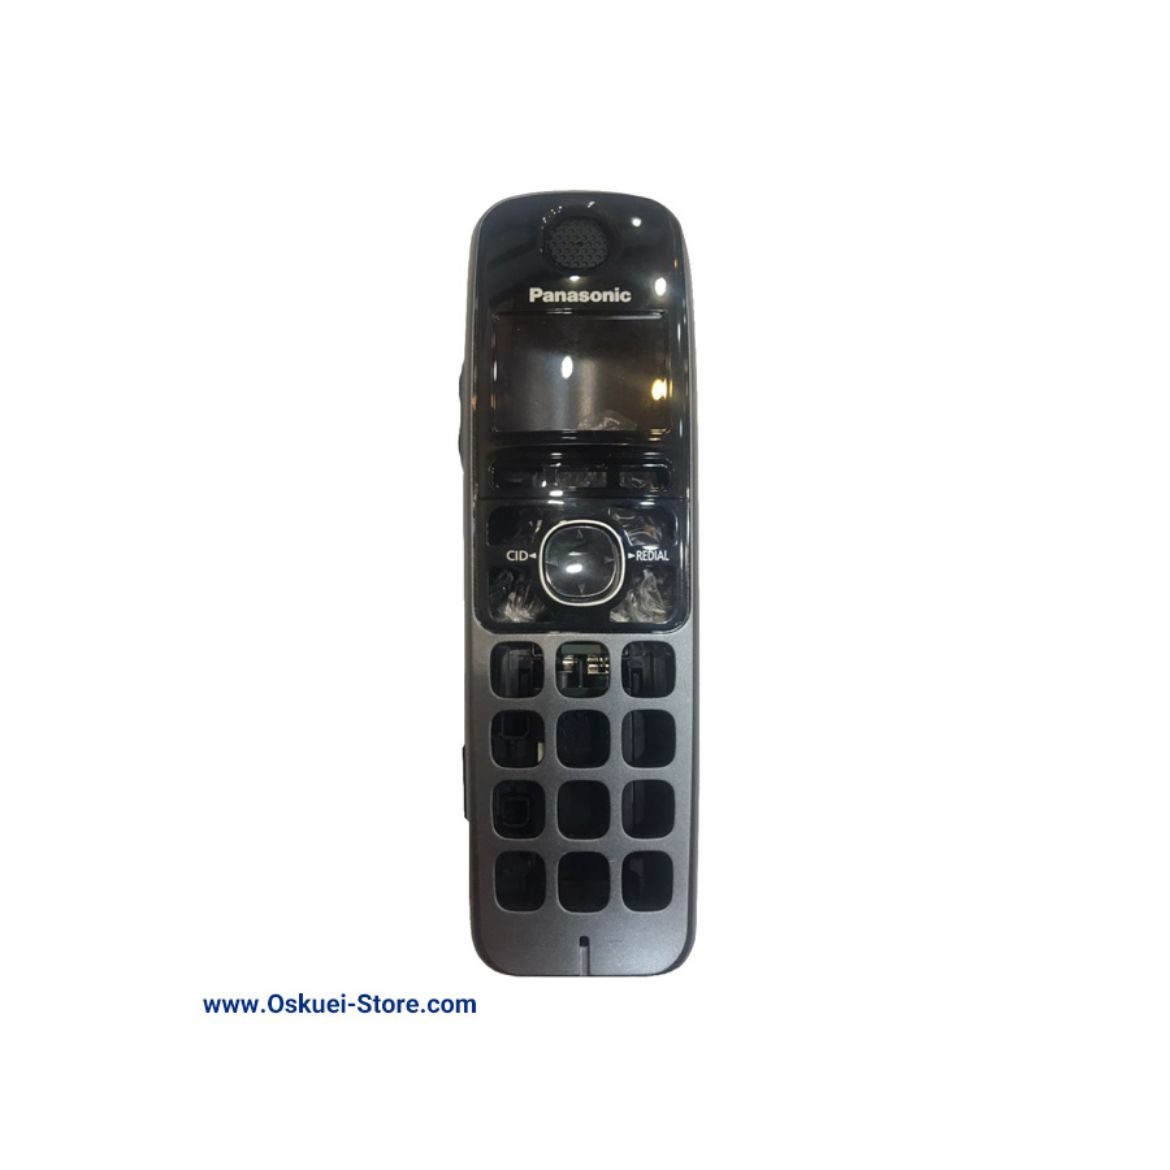 Panasonic KX-TGA470 Cordless Telephone